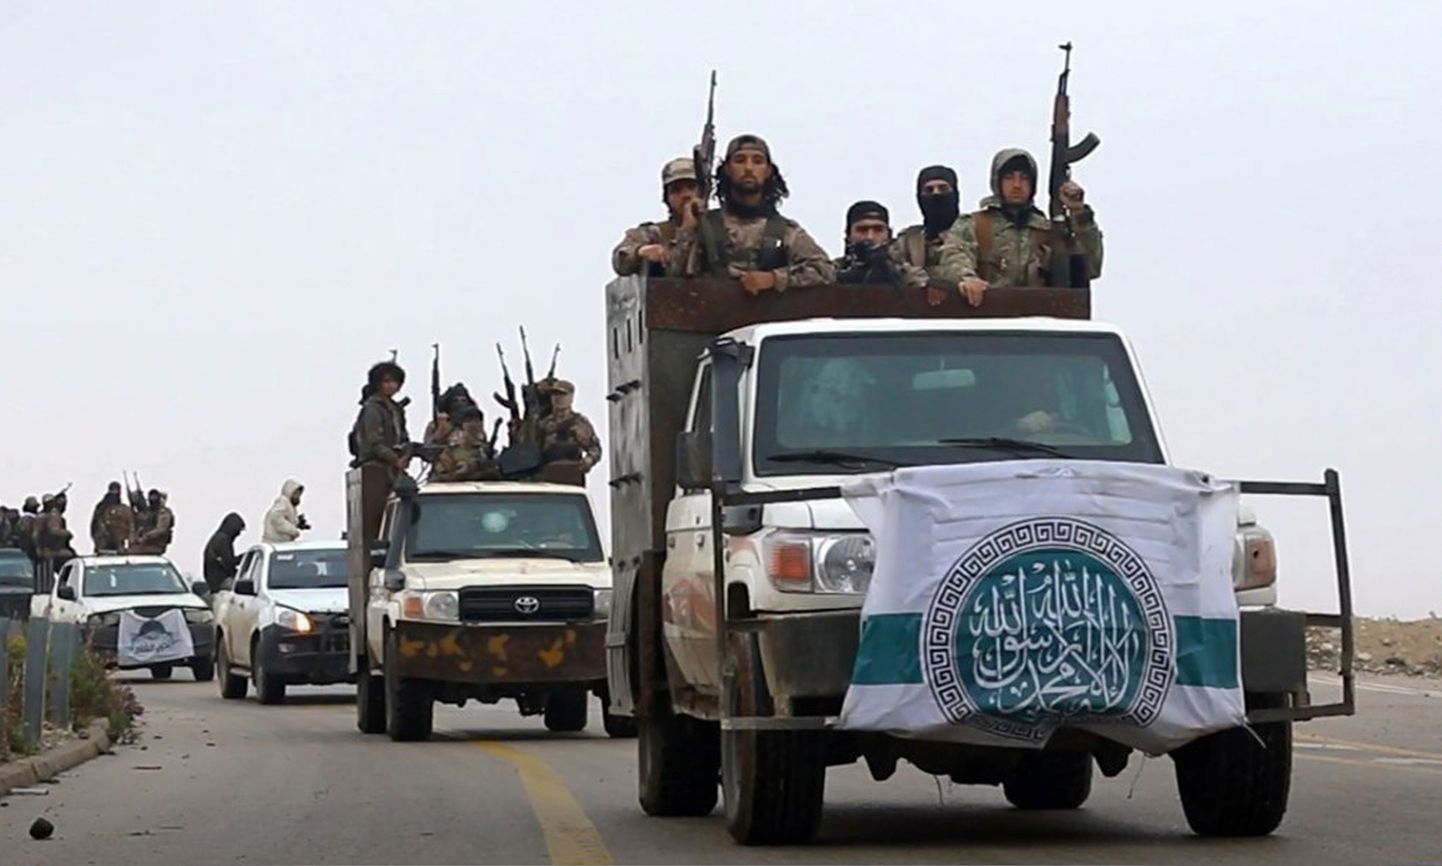 Al-Qaedaga seotud uudisetagentuur Ibaa News Agency avaldas foto äärmusrühmitusega liidus tegutsevatest võitlejatest Põhja-Süürias detsembri hakul.